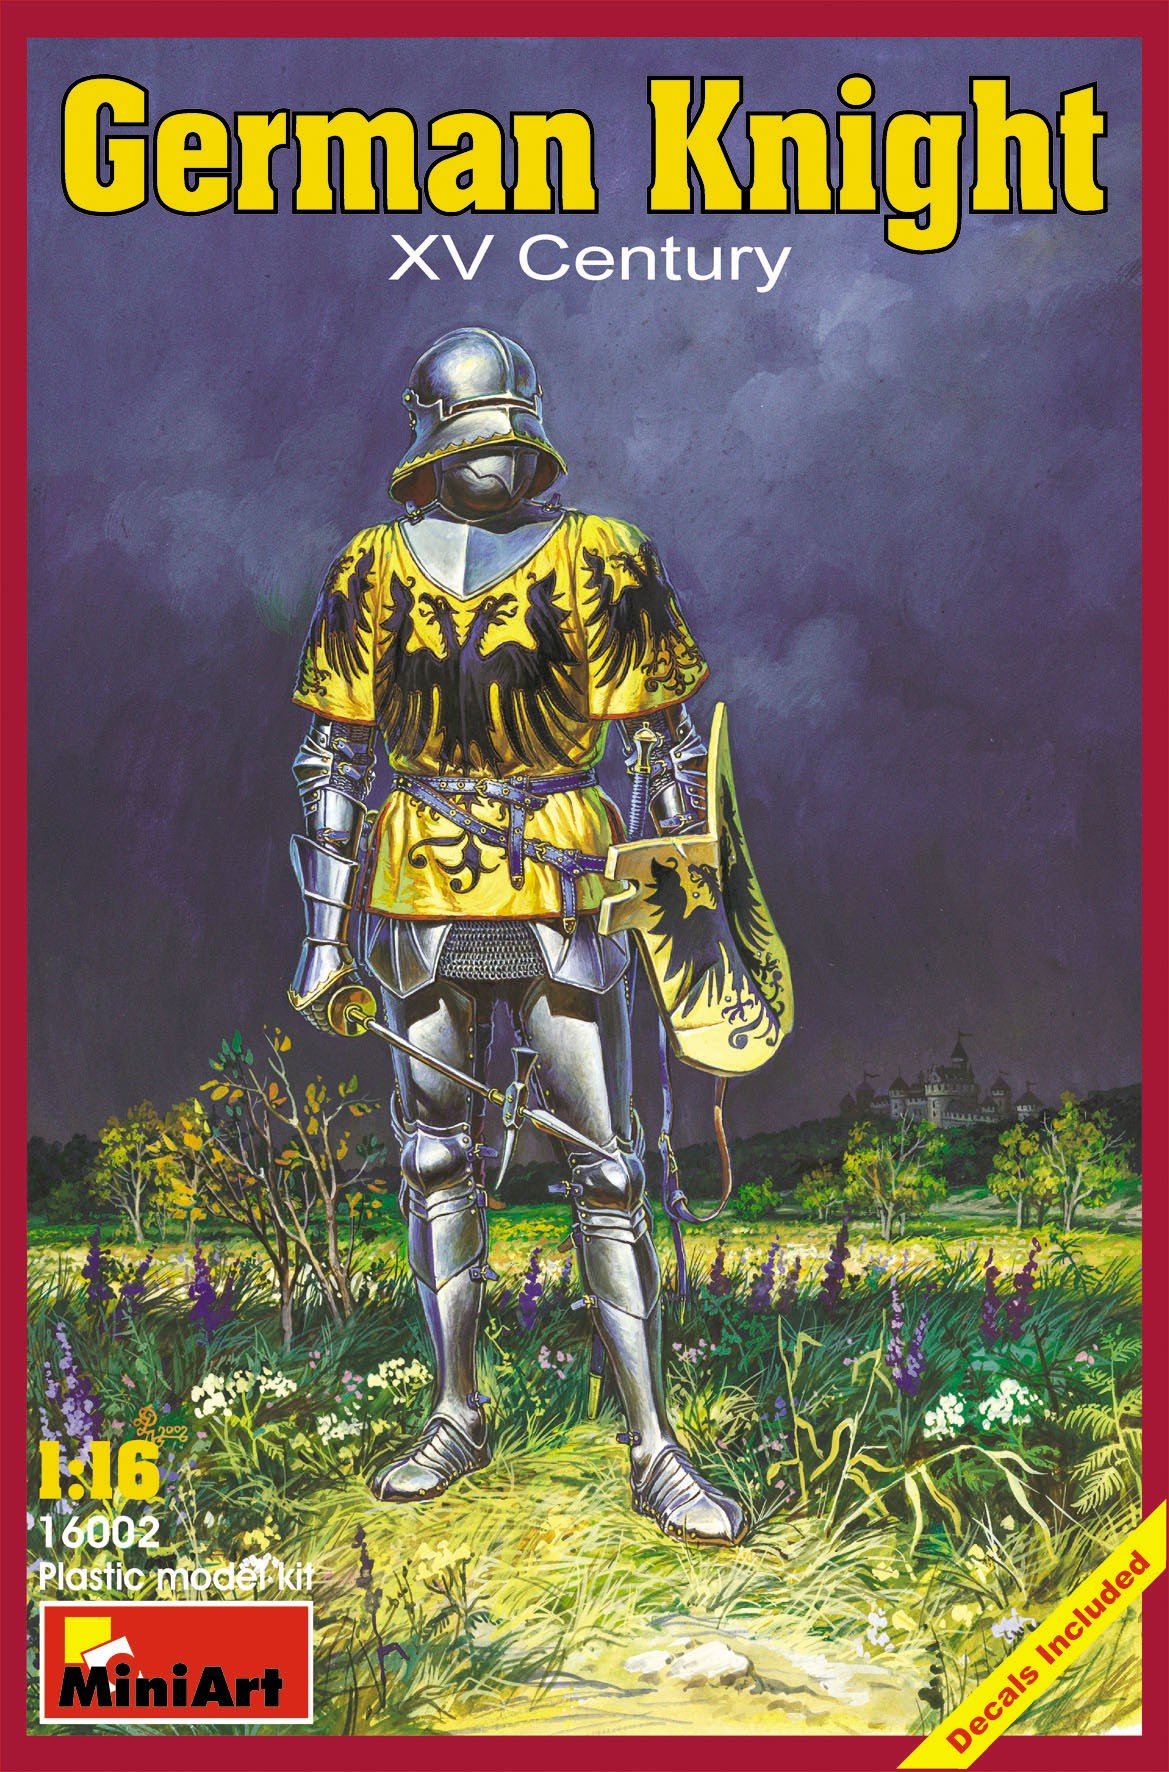 German Knight - XV Century by MiniArt